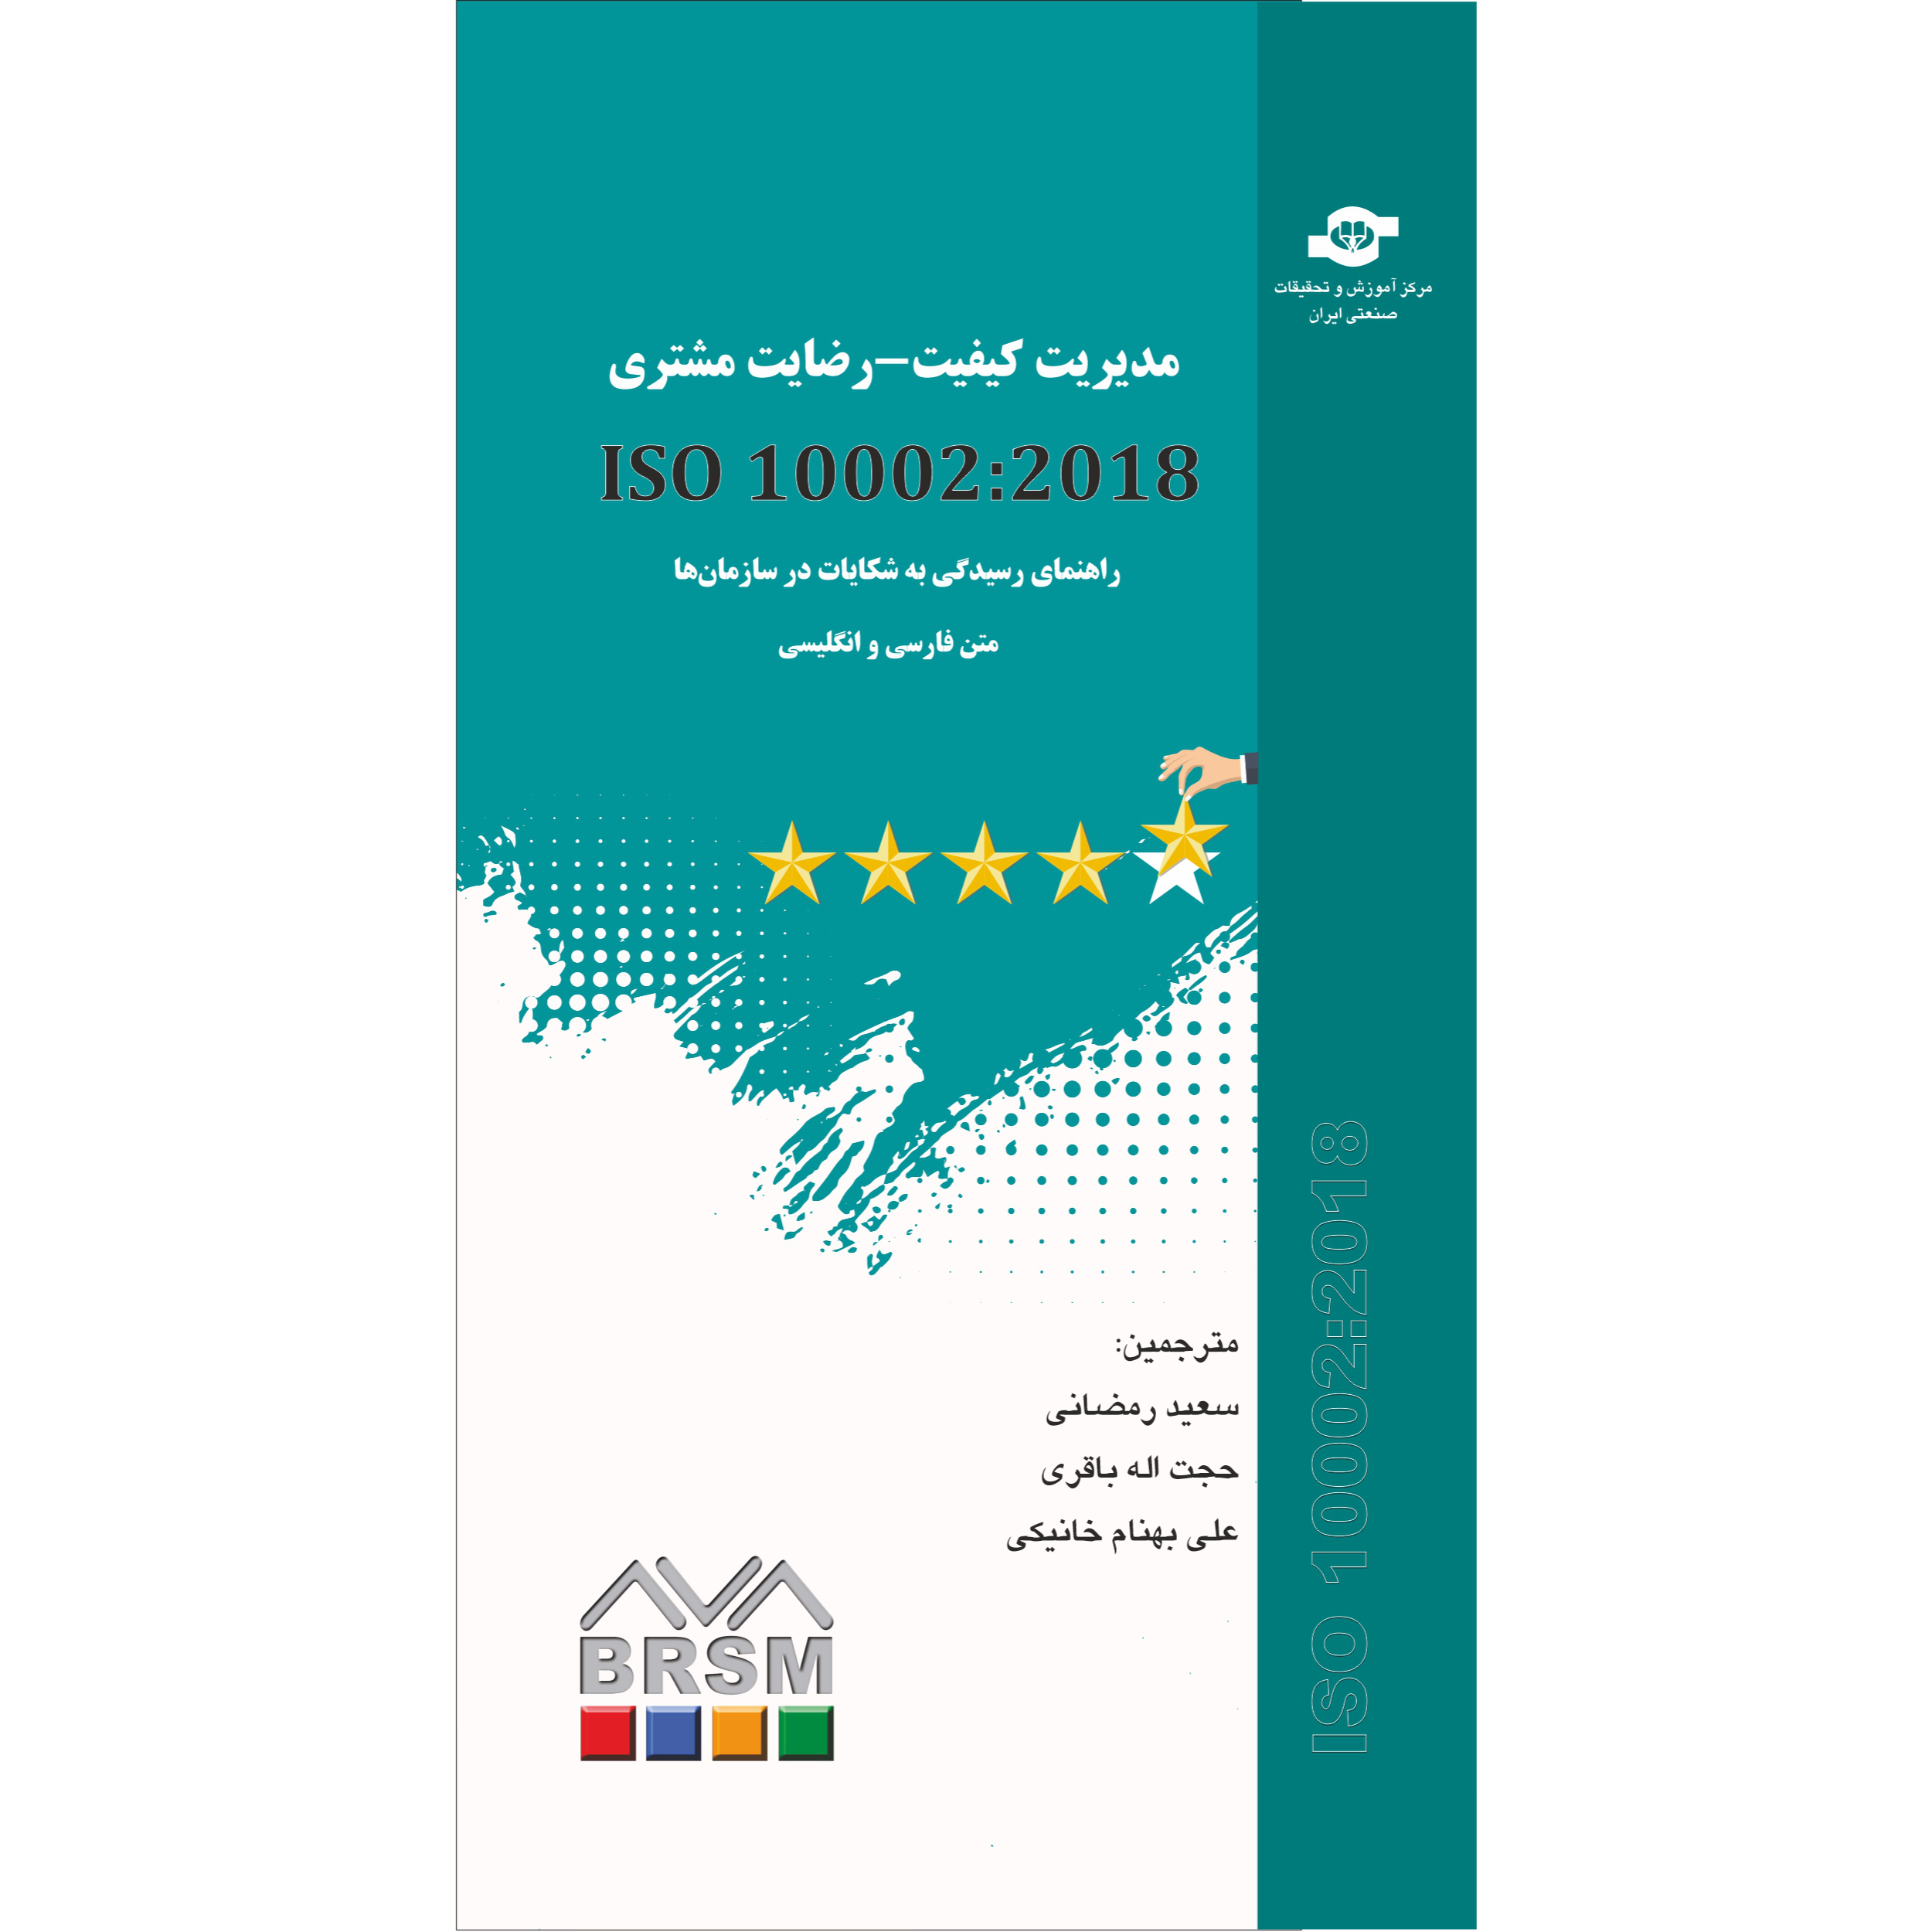 کتاب مدیریت کیفیت - رضایت مشتری ISO10002:2018 راهنمای رسیدگی به شکایات در سازمان اثر سازمان جهانی استاندارد انتشارات مرکز آموزش و تحقیقات صنعتی ایران ها